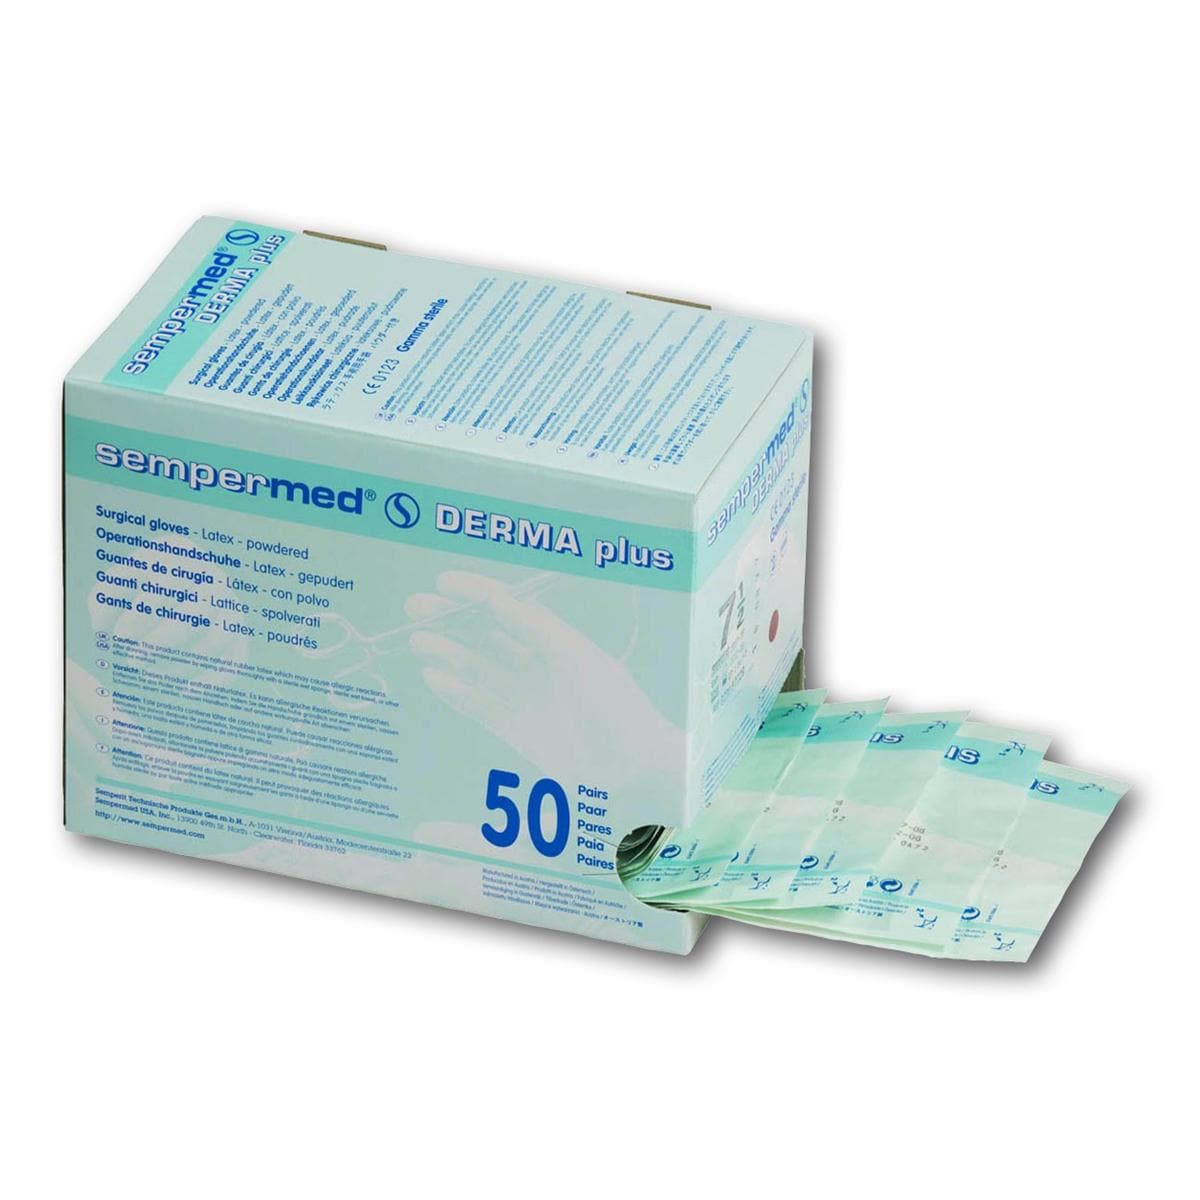 Sempermed® Derma Plus gepudert - Größe 9, Packung 50 Paar